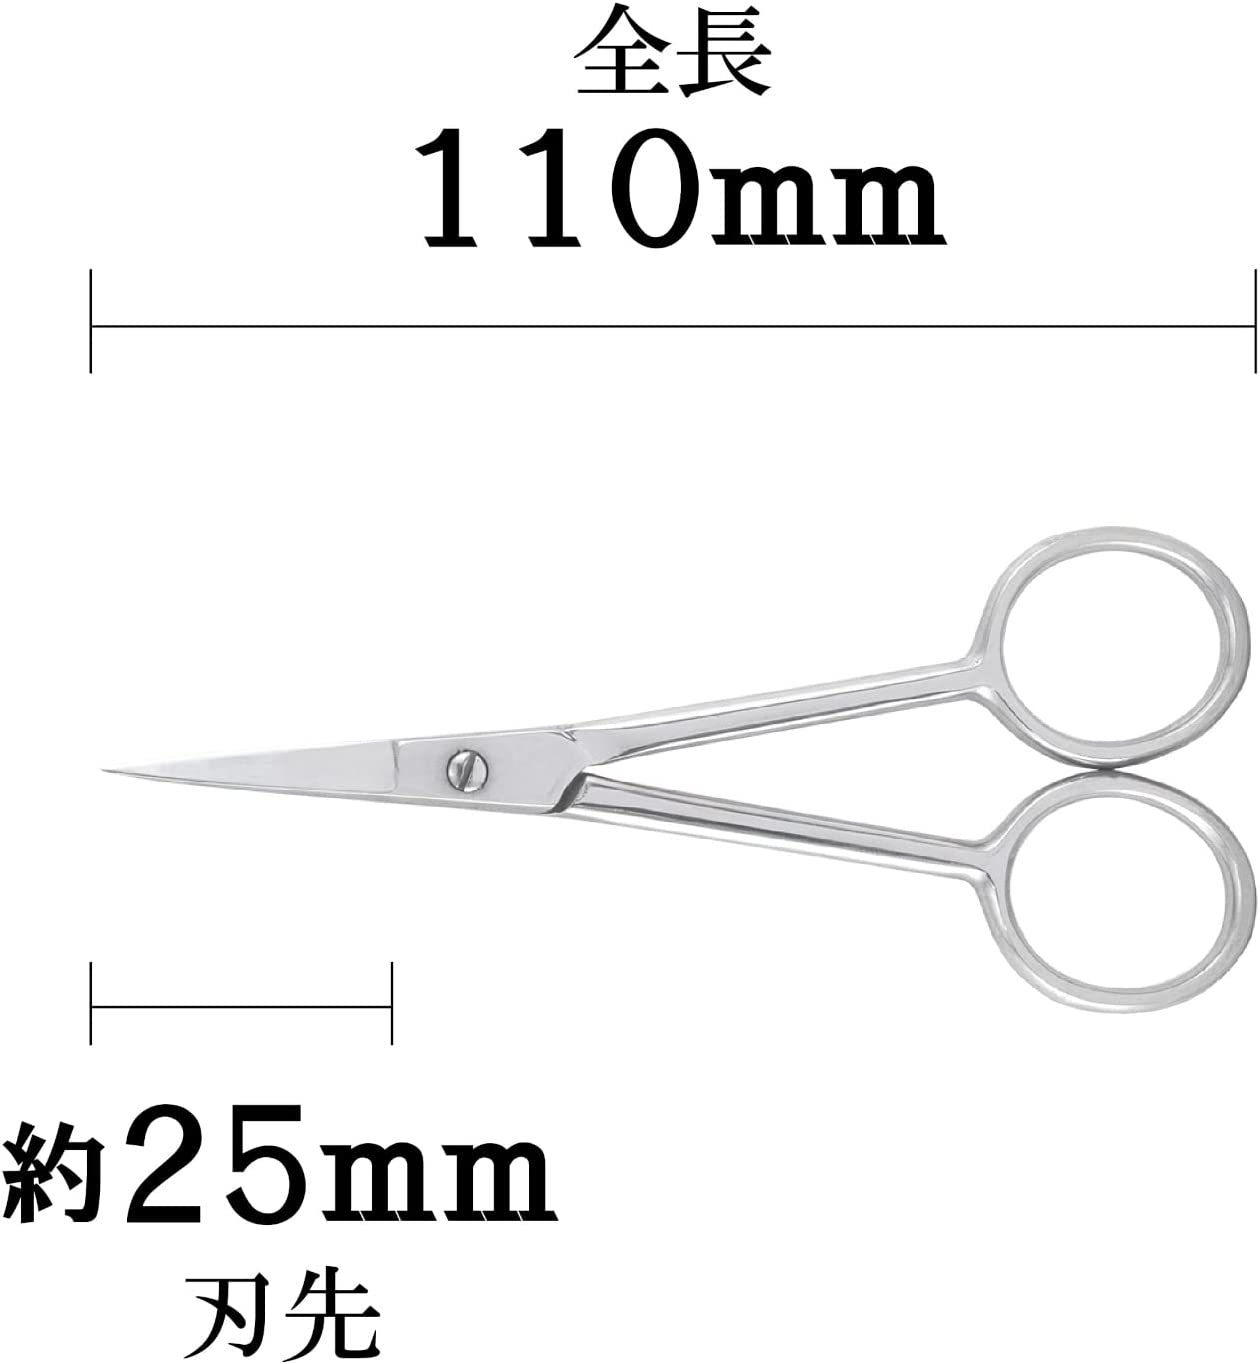 TM-30 Accurate Scissors 110mm [Straight]